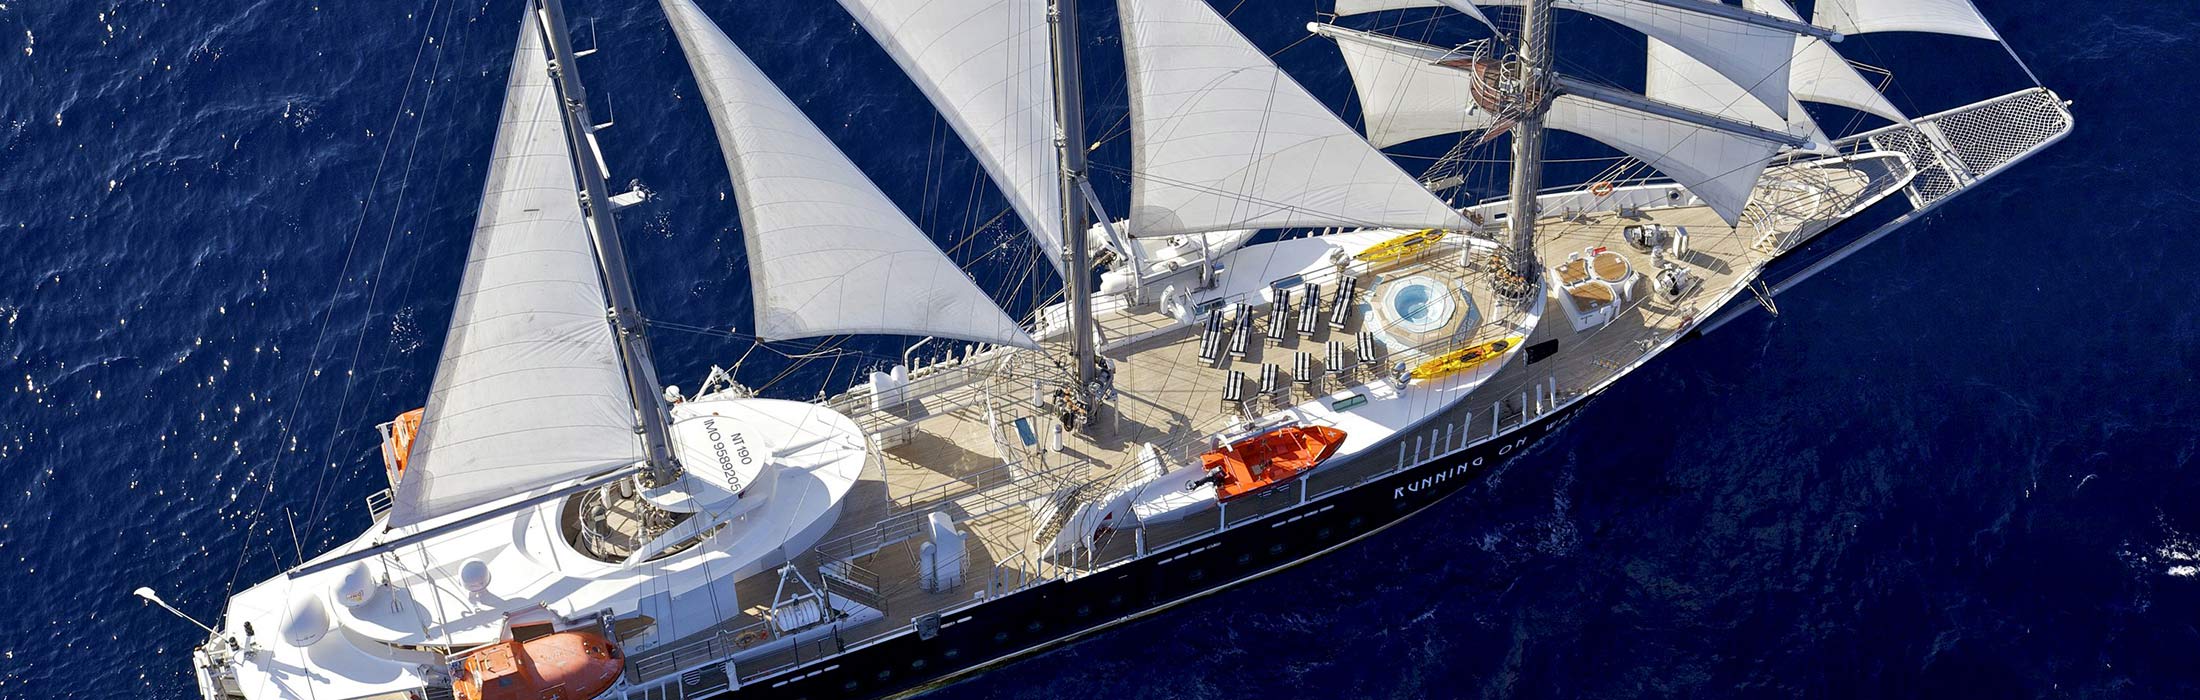 luxury yacht charter destinations mediterranean greece santorini main slider 1 5